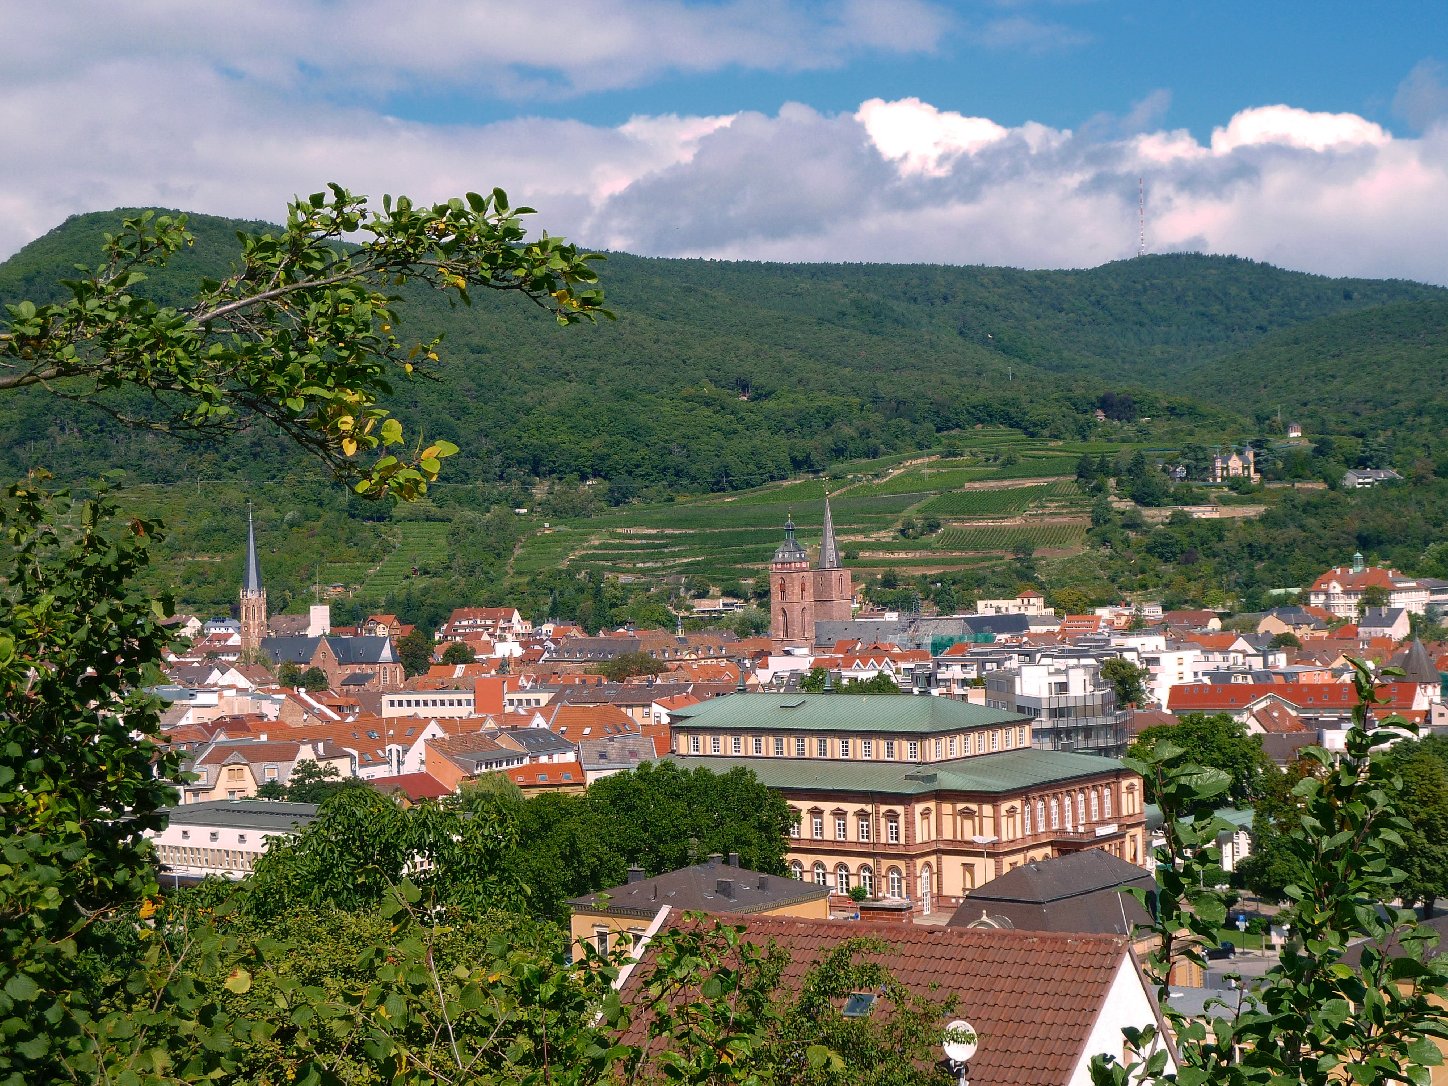 Neustadt untersagt weiterhin unangemeldete »Montagsspaziergänge« | Pfalz-Ex...